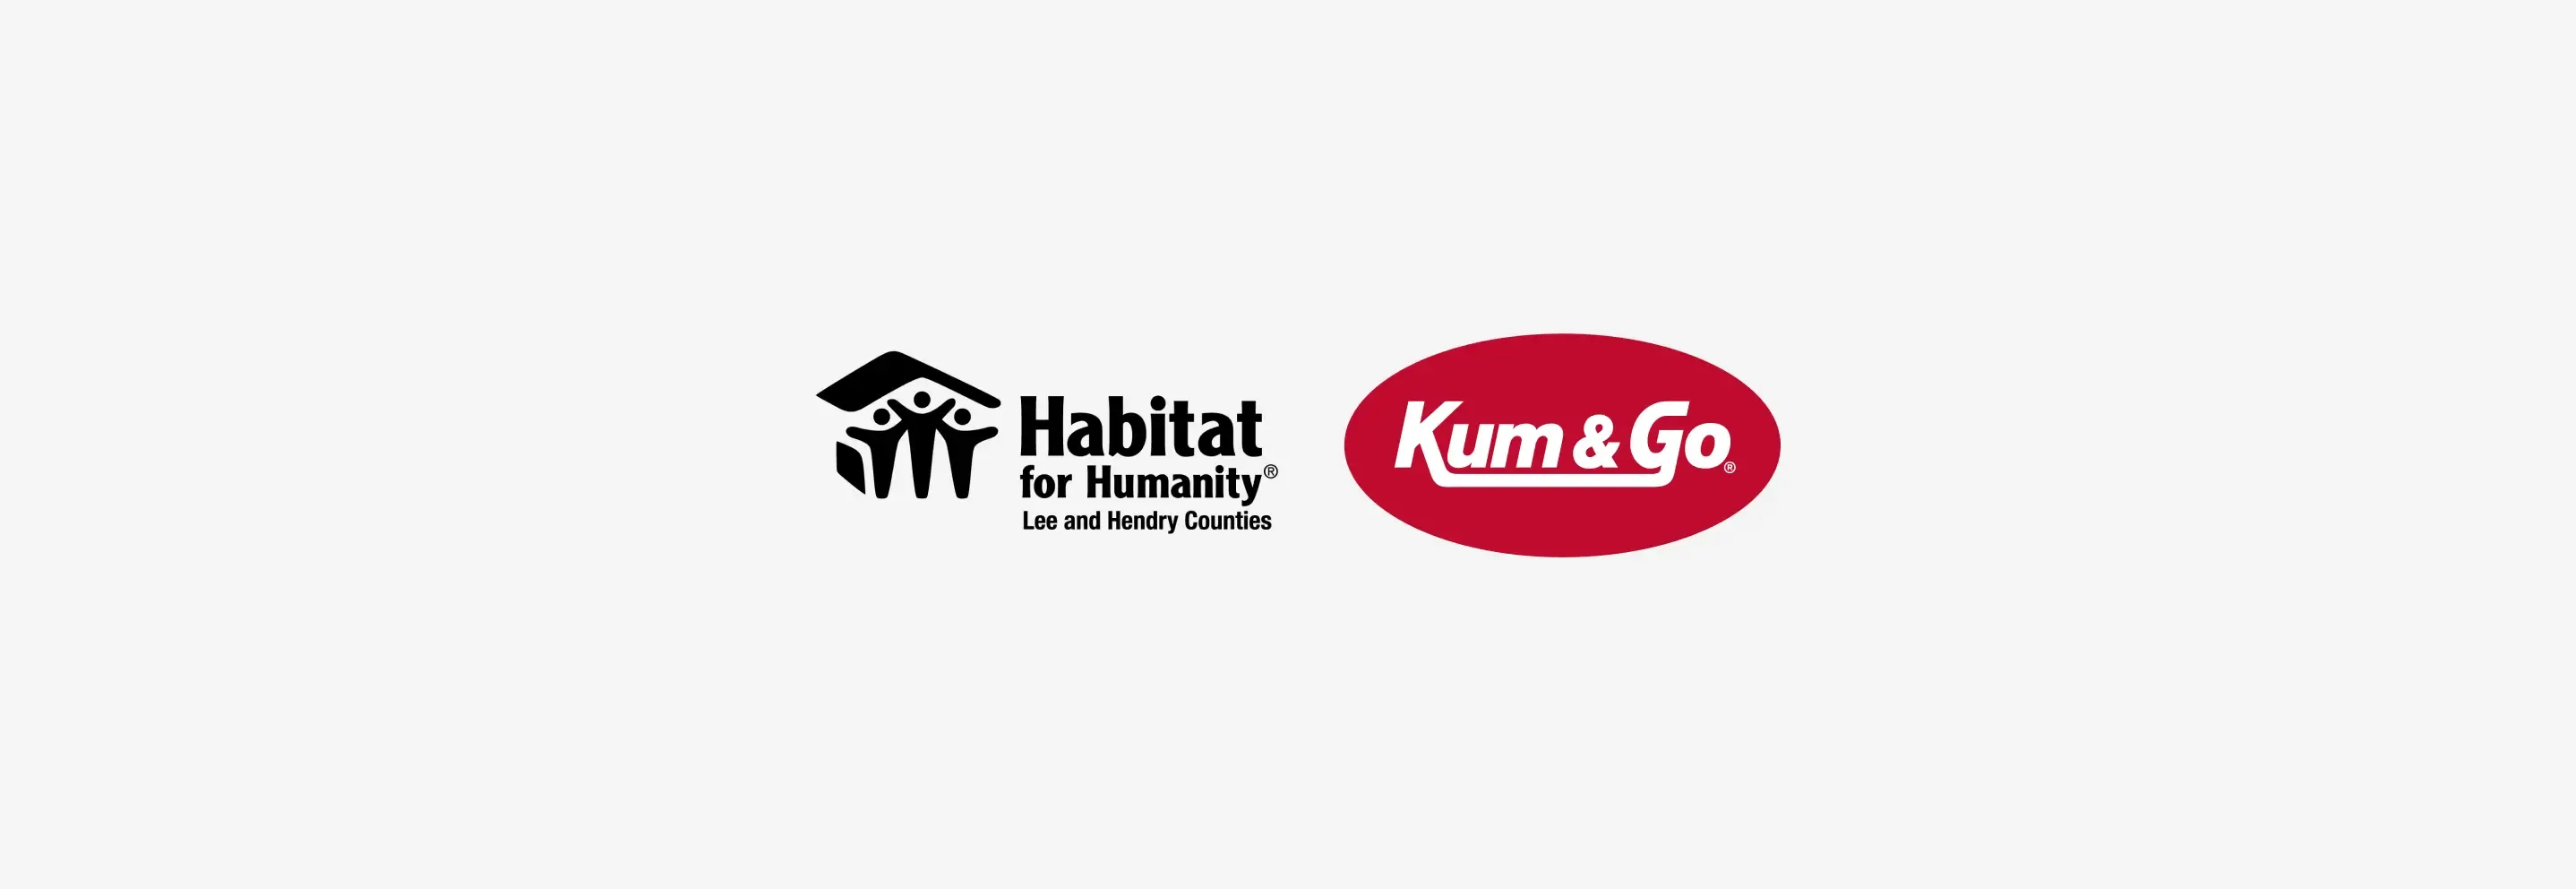 Kum & Go and Habitat for Humanity celebrate nine years of partnership